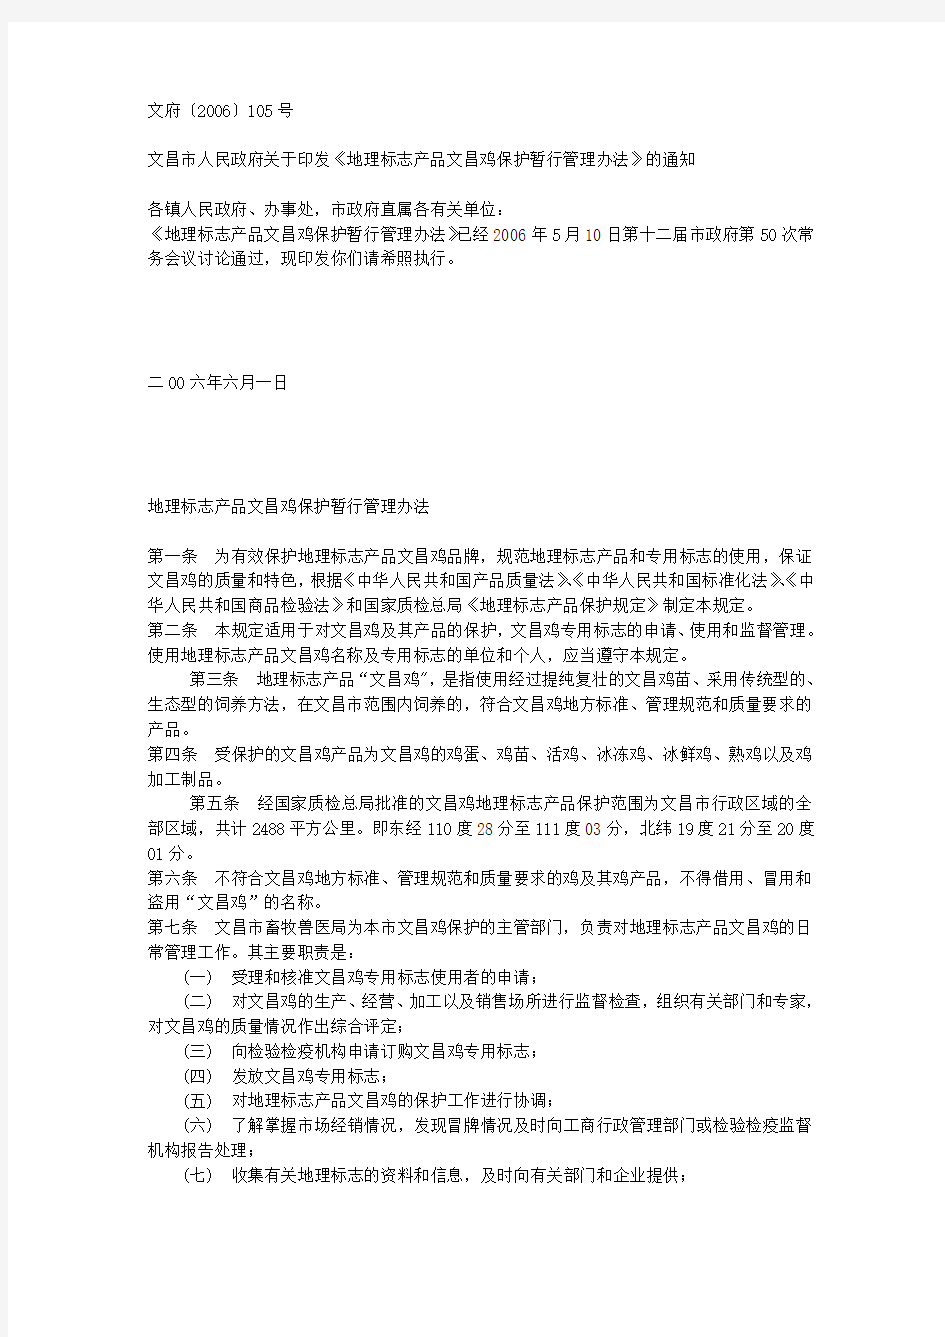 文昌市人民政府关于印发《地理标志产品文昌鸡保护暂行管理办法》的